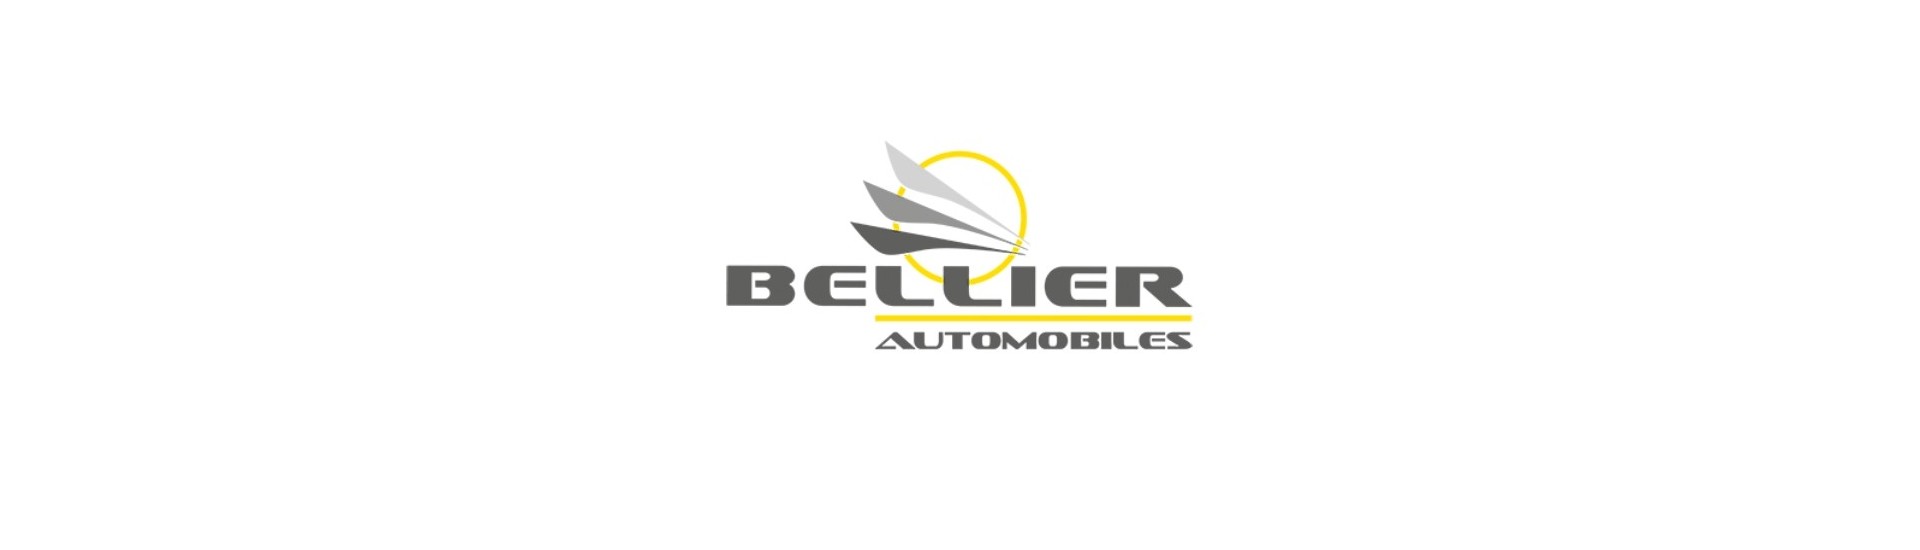 Radiator-Support zum besten Preis für Auto ohne Lizenz Bellier